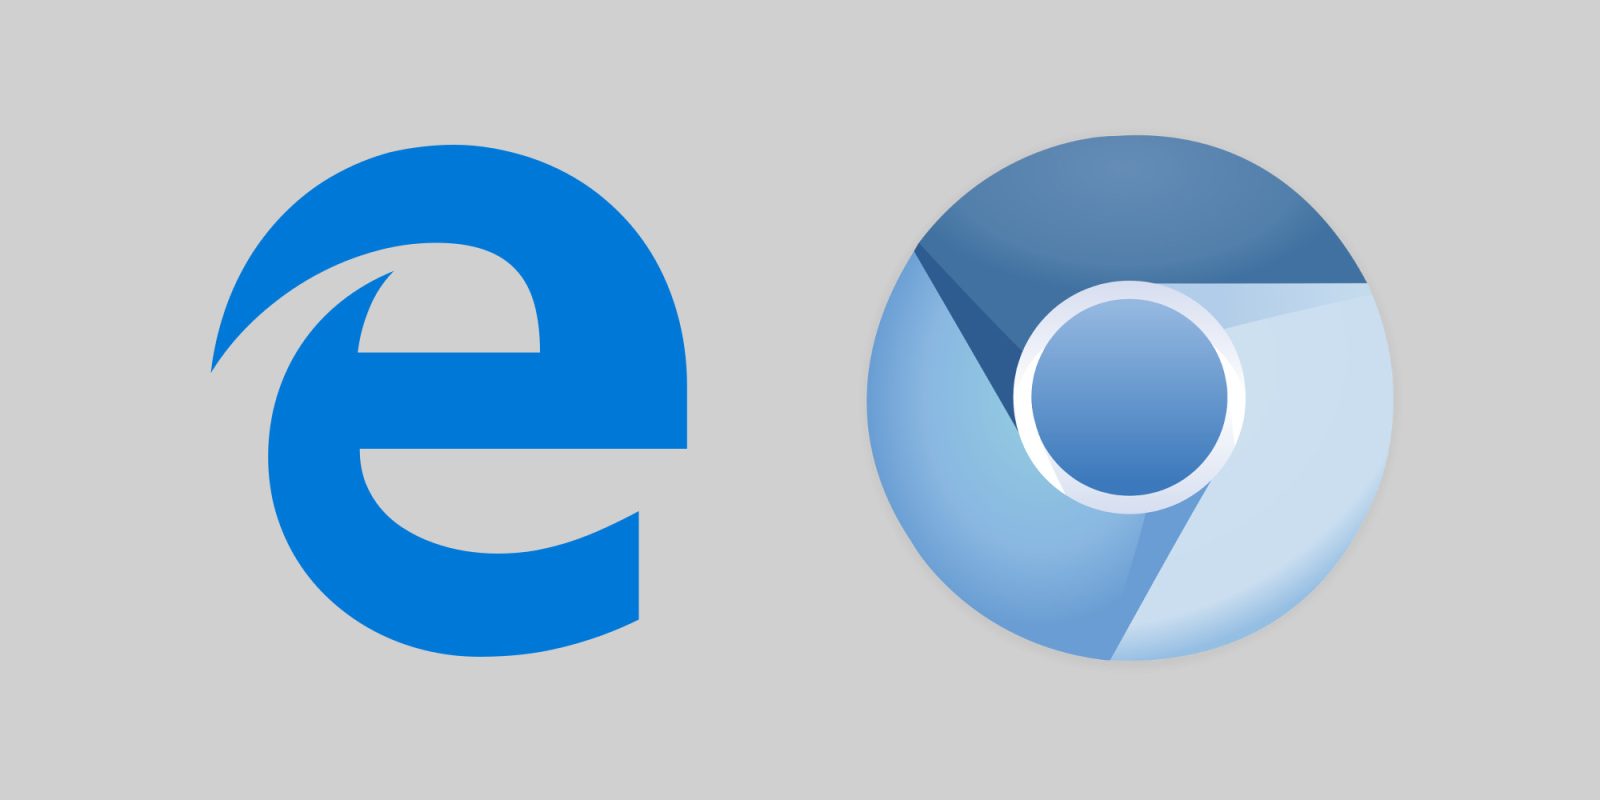 Edge 开发团队透露更多细节：兼容 Chrome 扩展